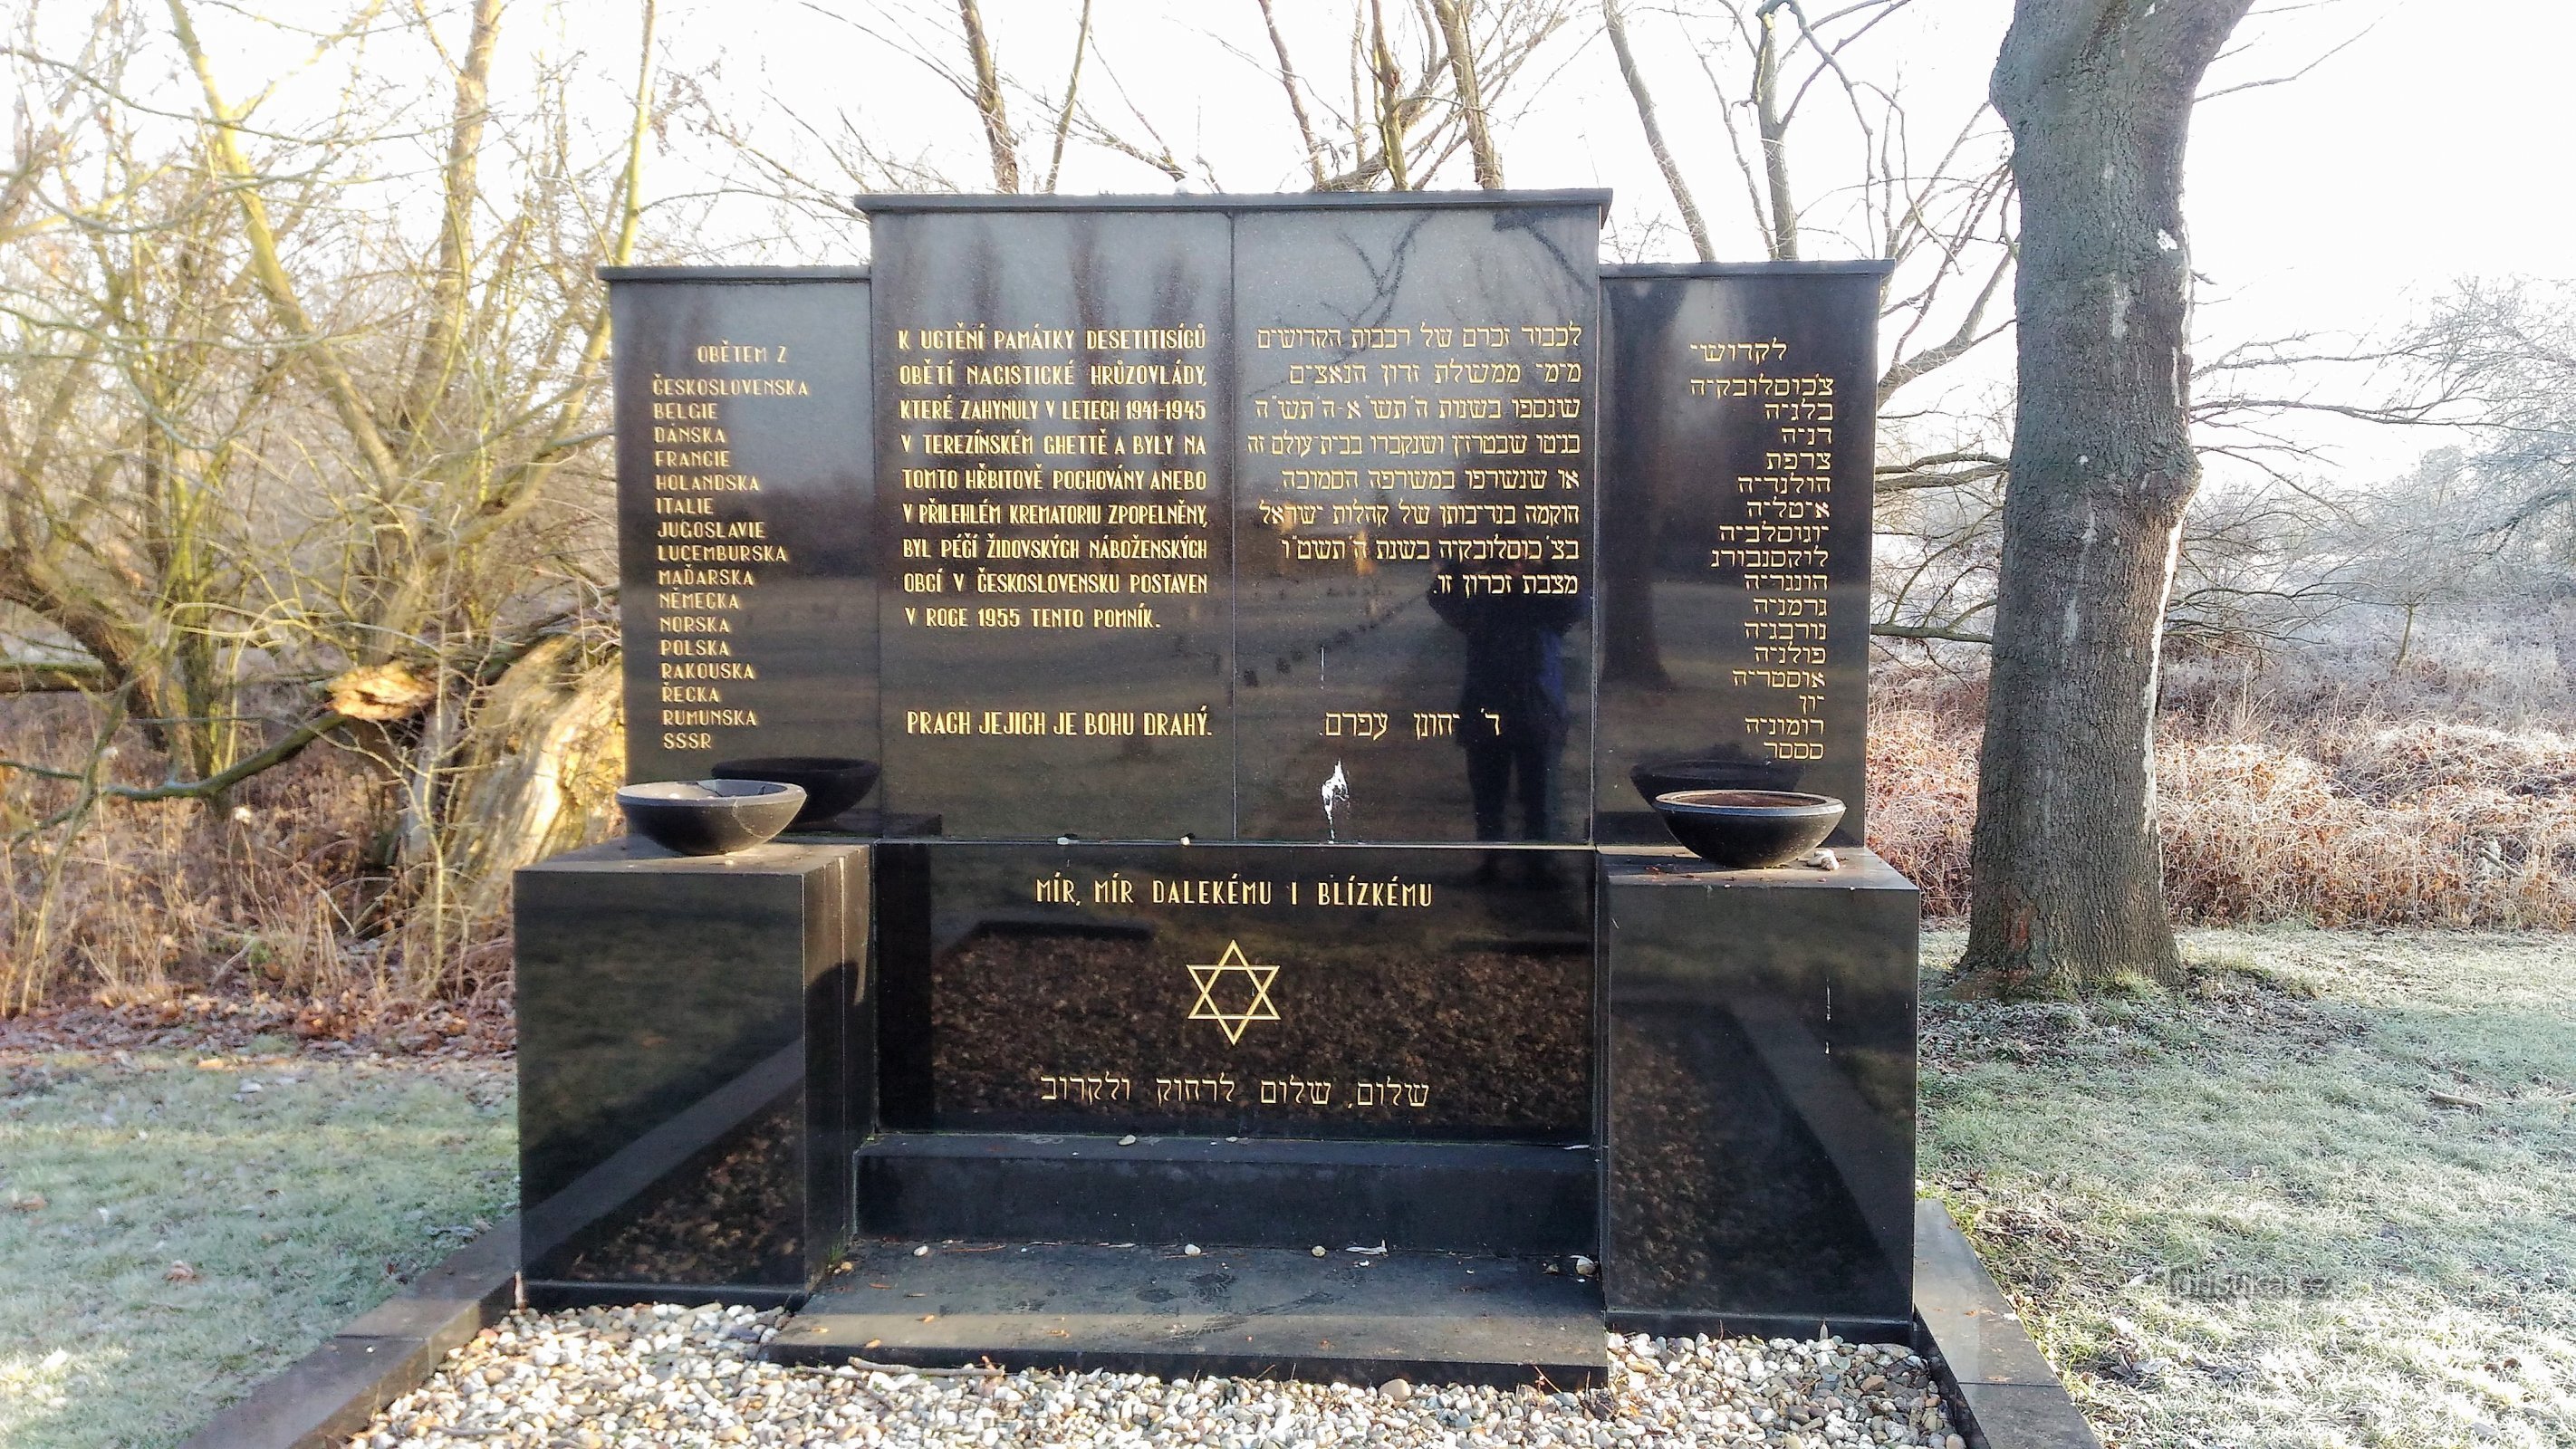 テレジーン ゲットーの犠牲者の記念碑。